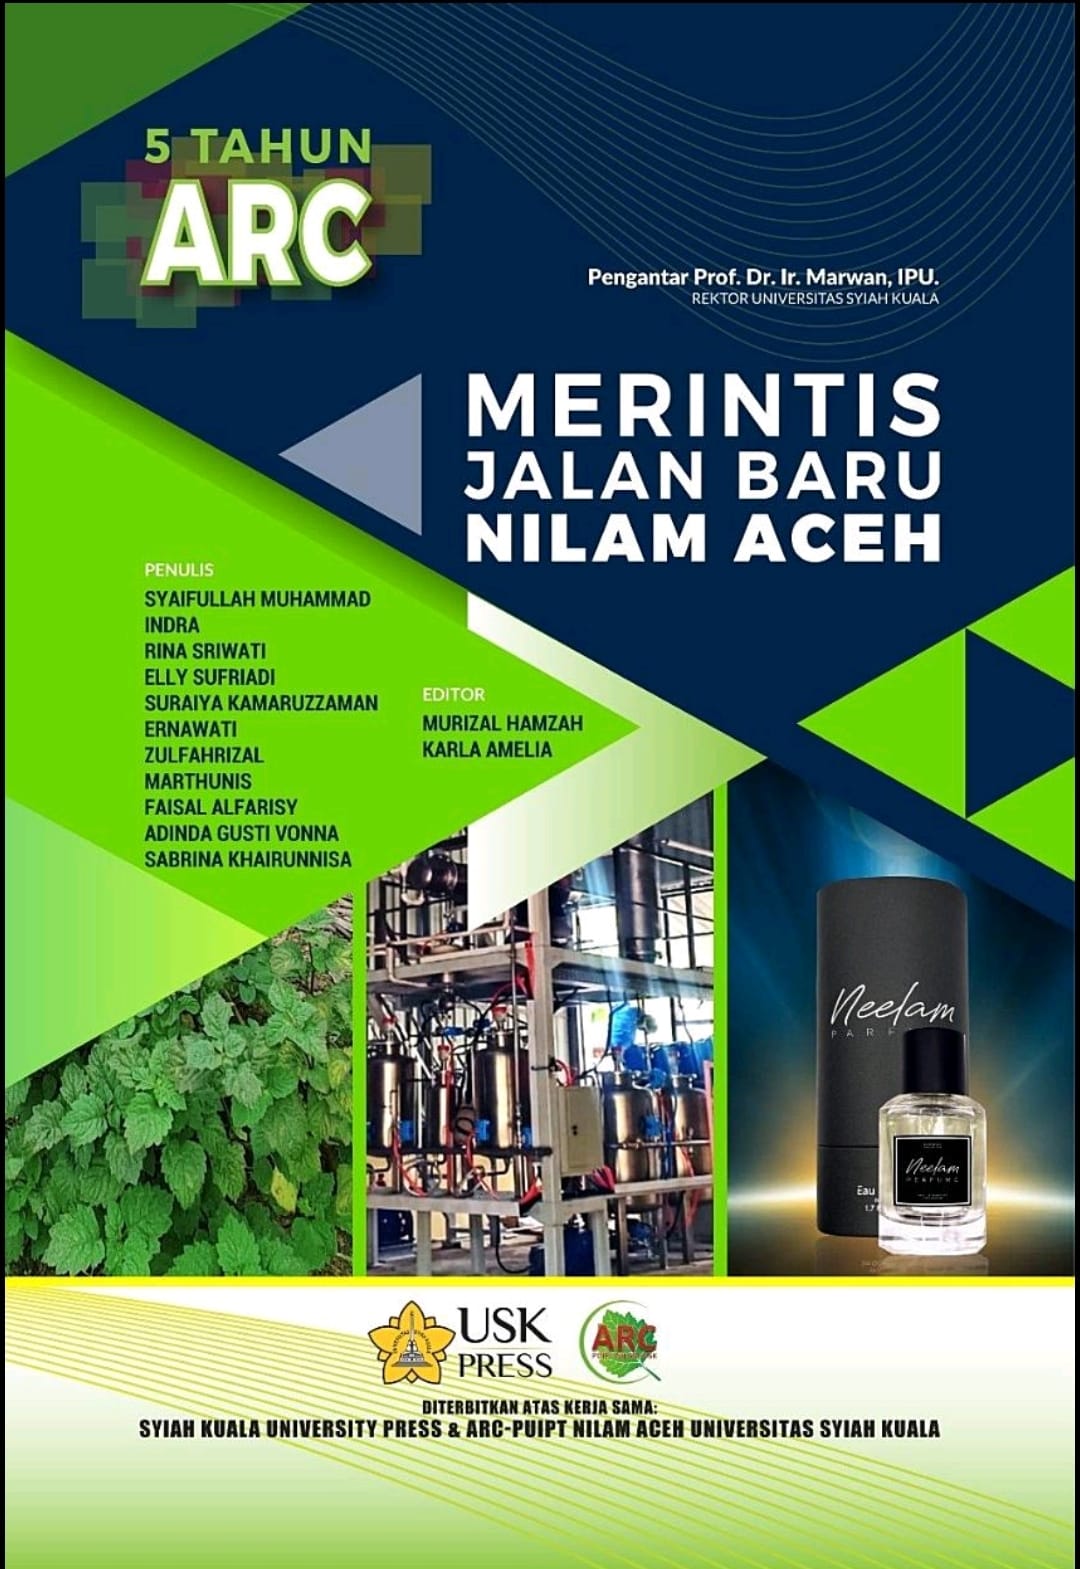 ARC-USK Terbitkan Buku Baru, Berisi Pengalaman 5 Tahun Merintis Nilam Aceh